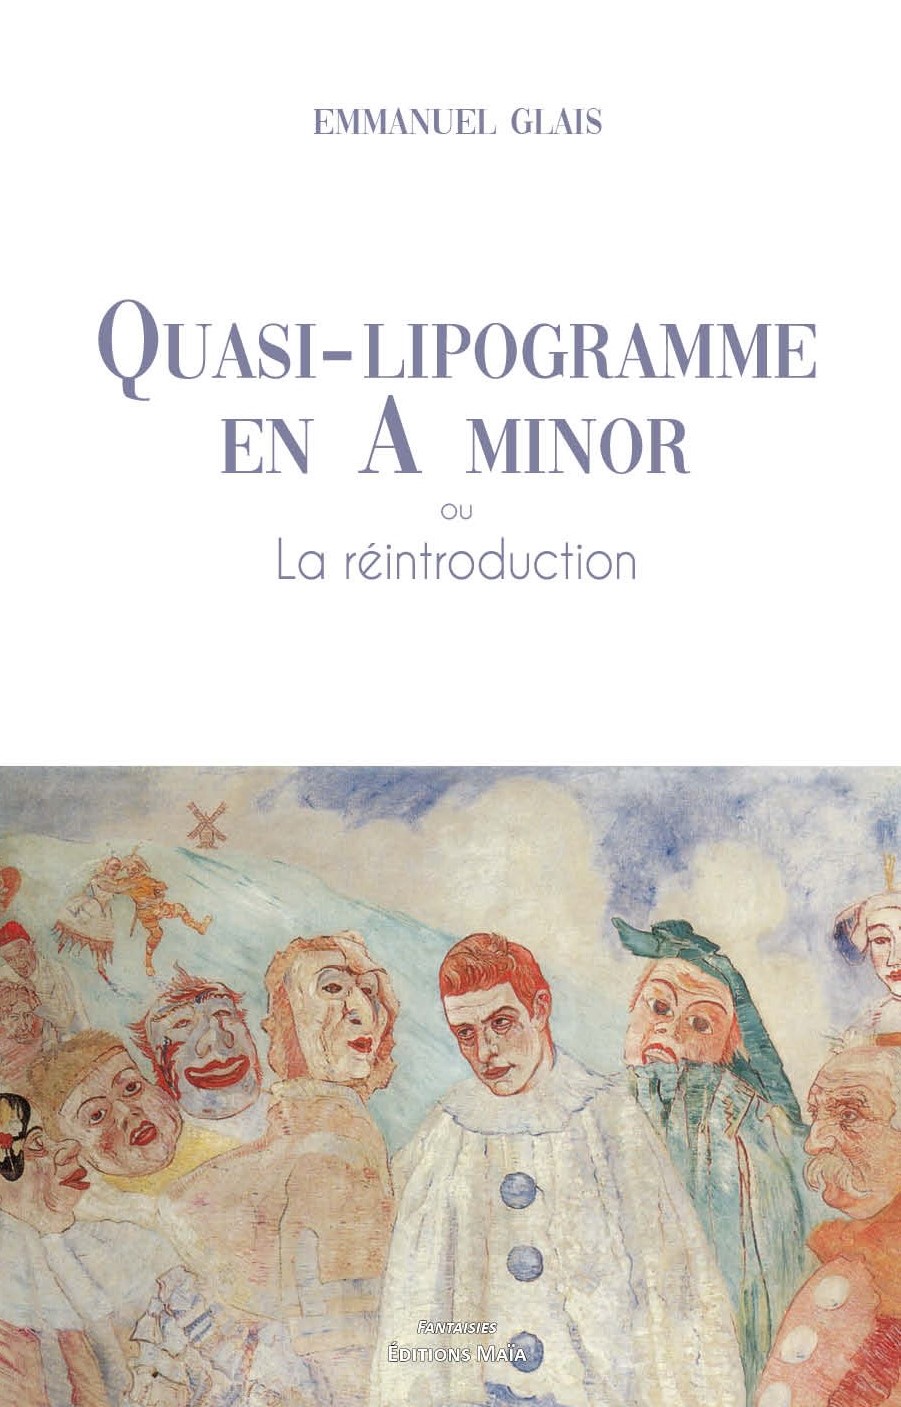 maïa - Quasi-lipogramme en A minor - Editions Maïa Couver10